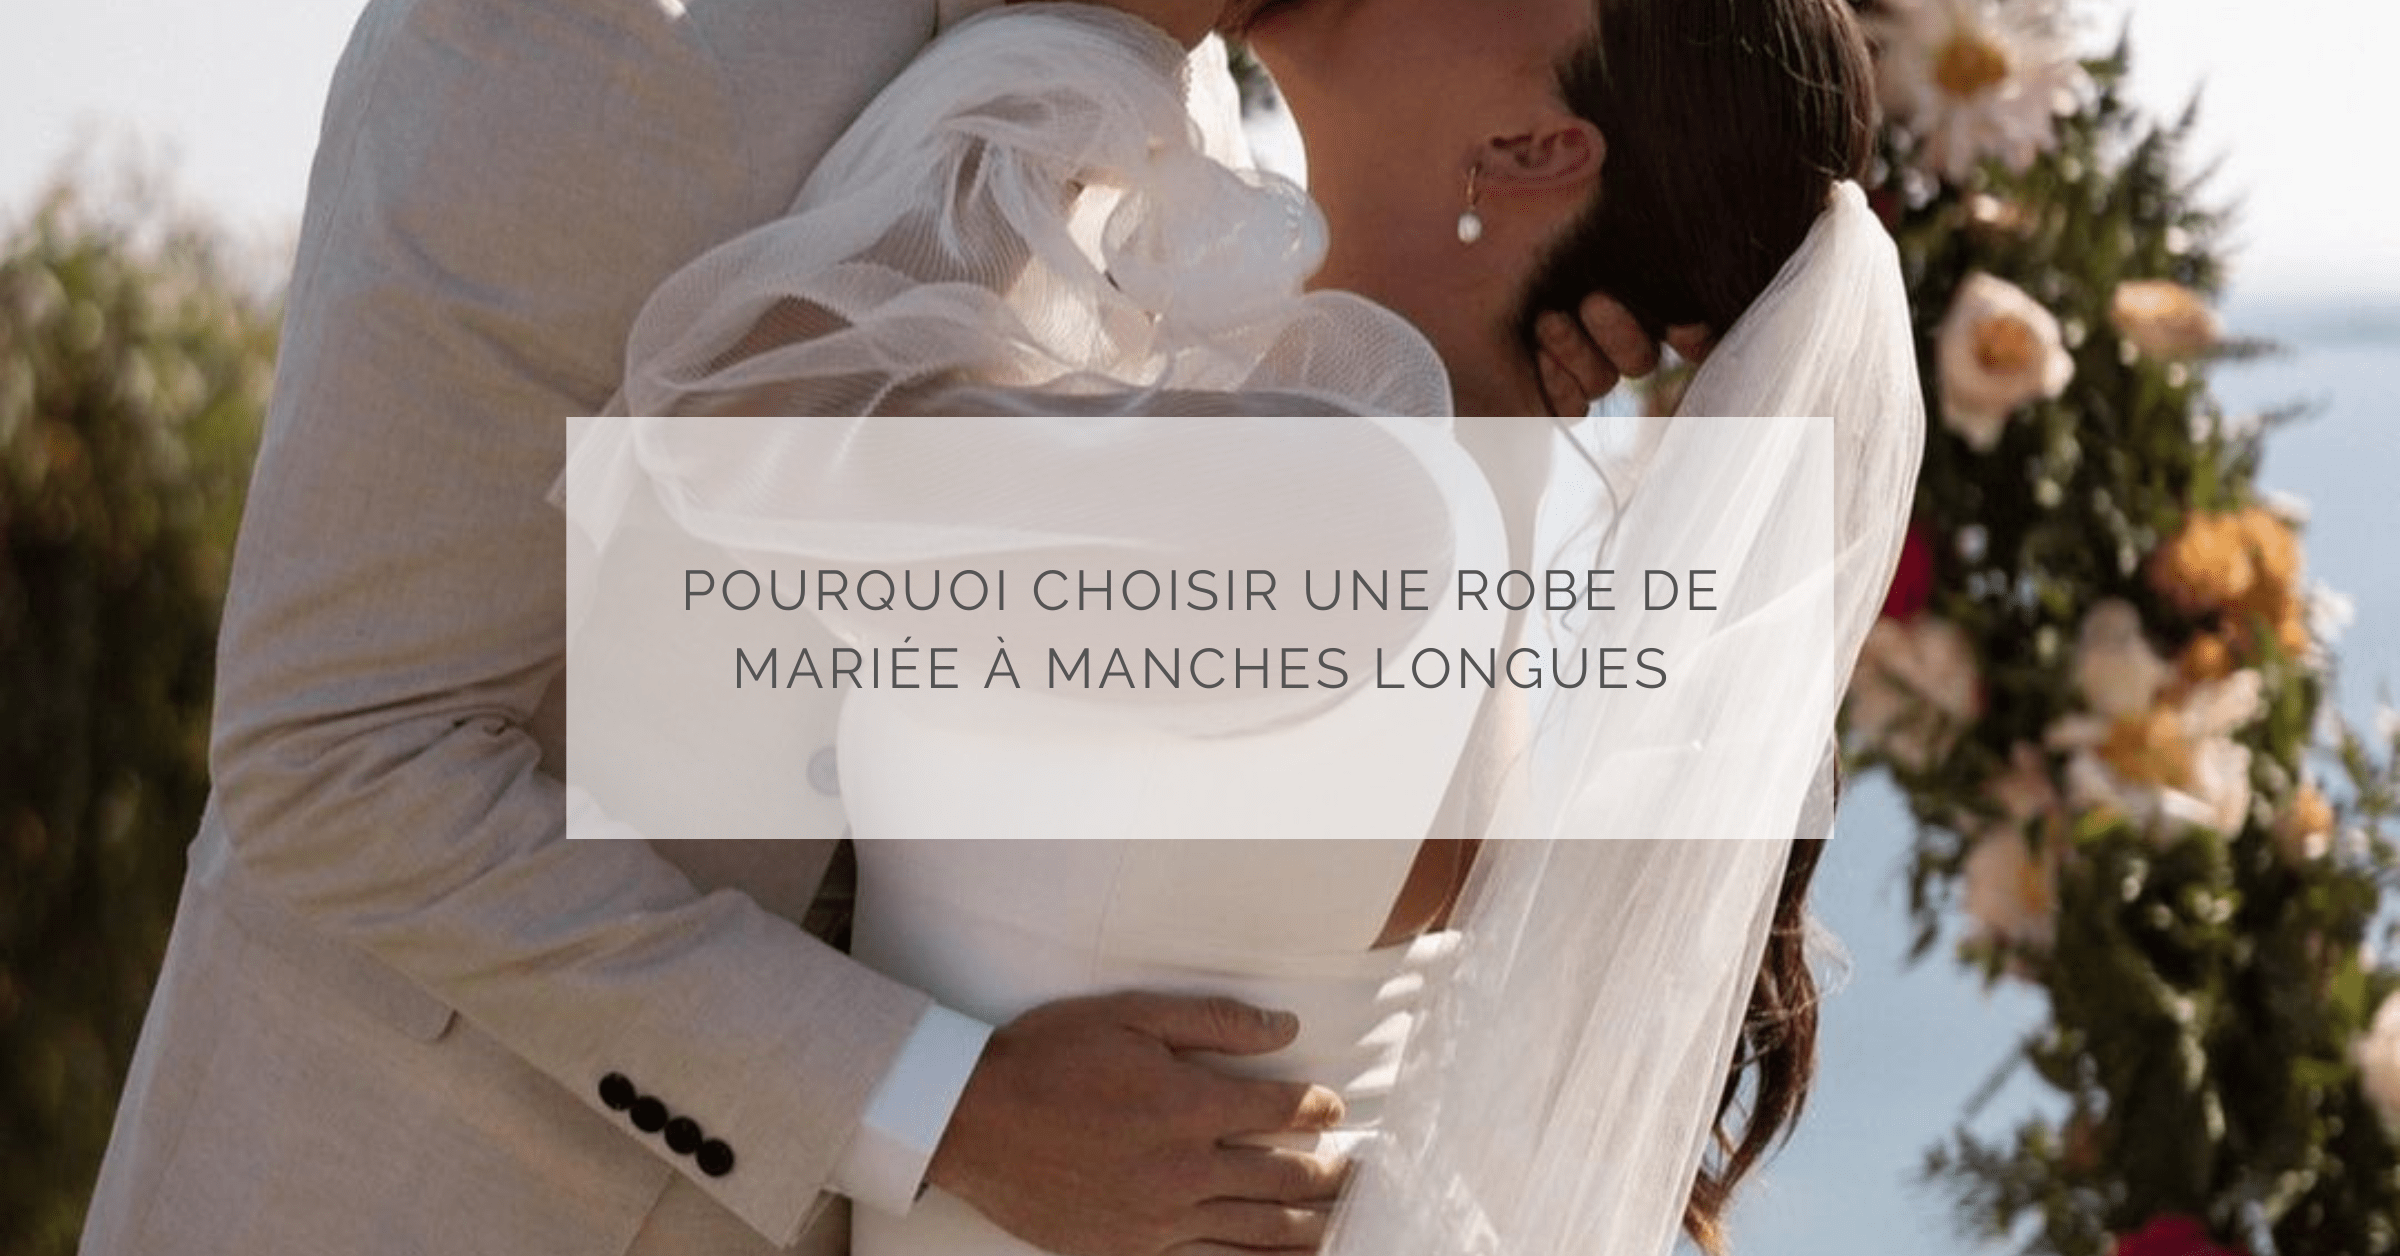 Pourquoi choisir une robe de mariée à manches longues au Québec?